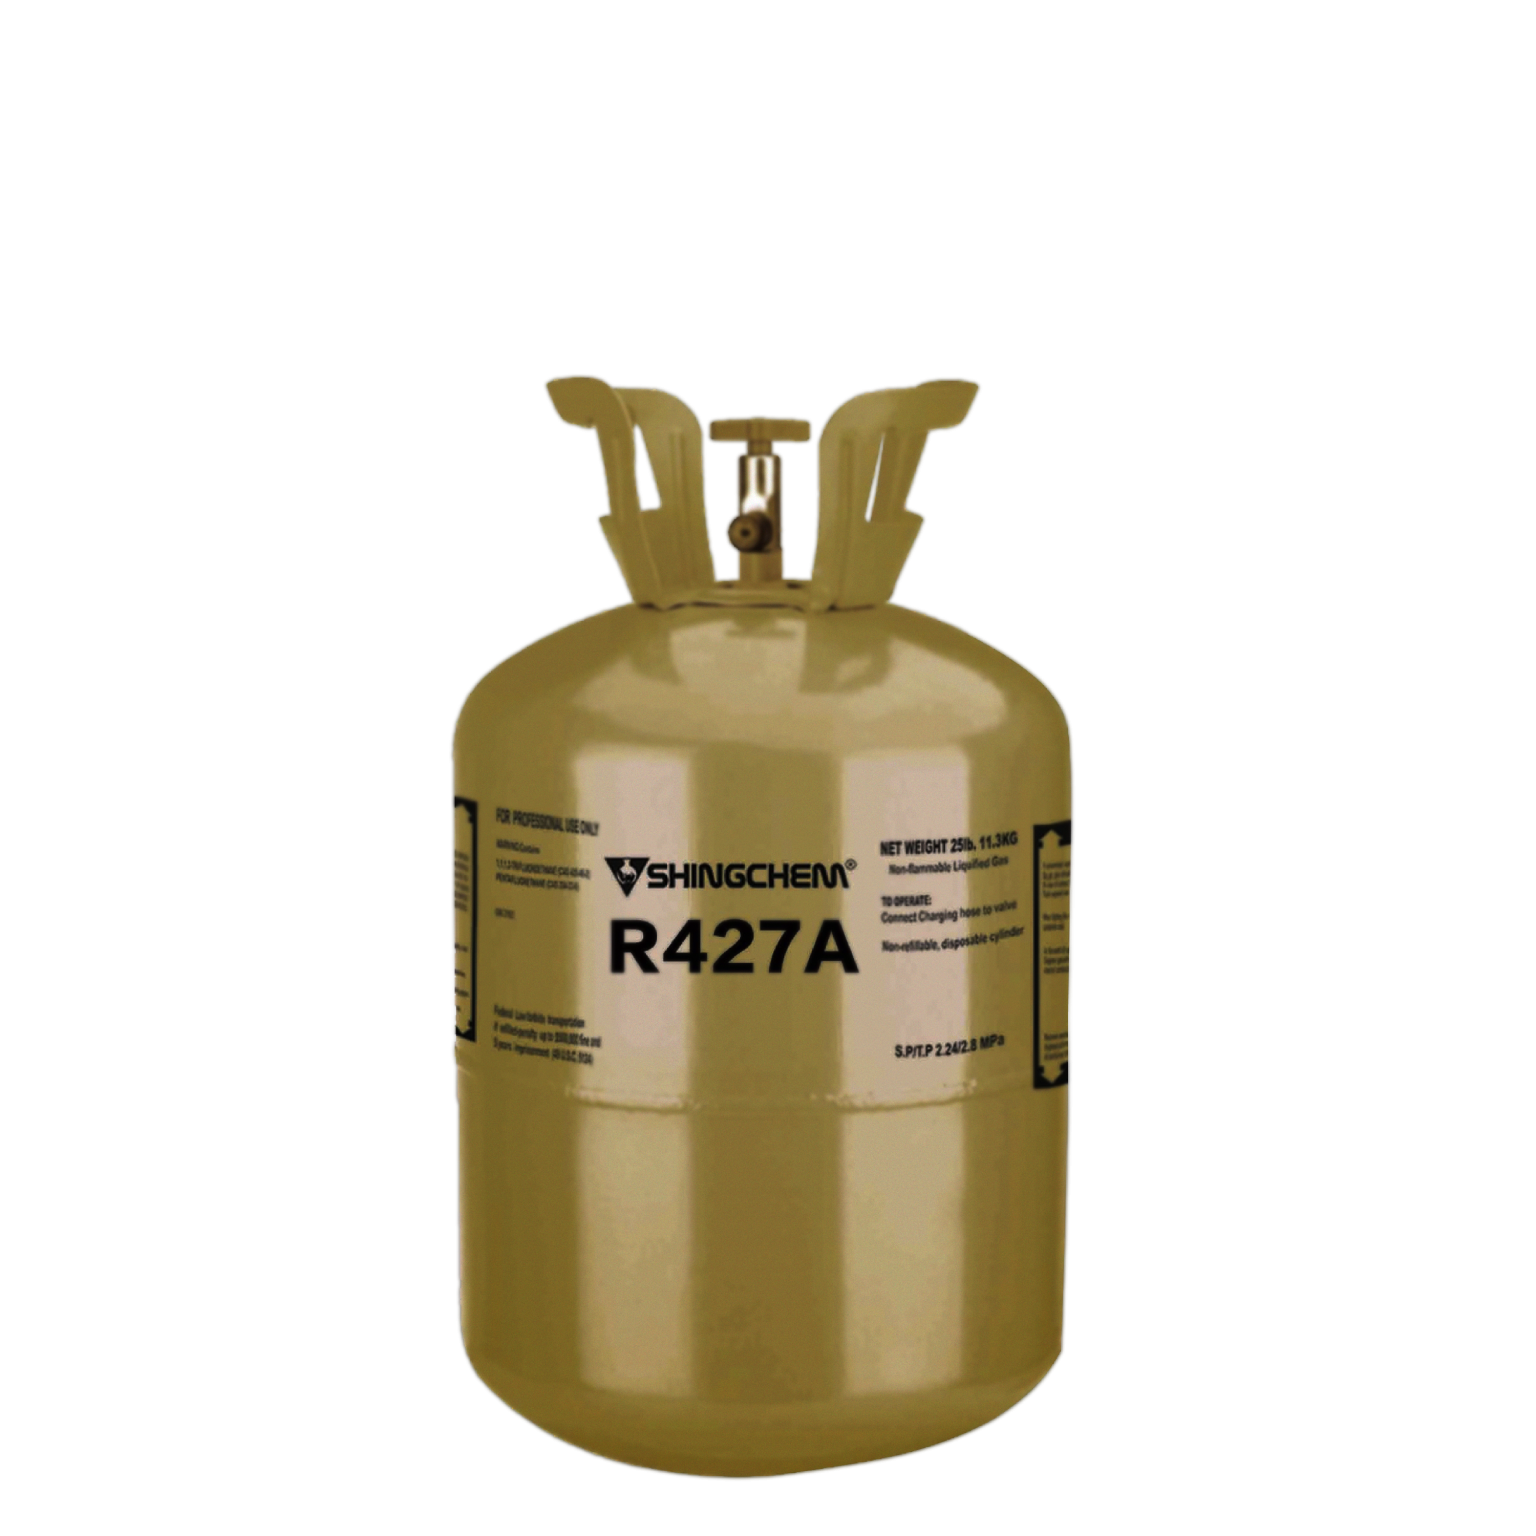 R427A